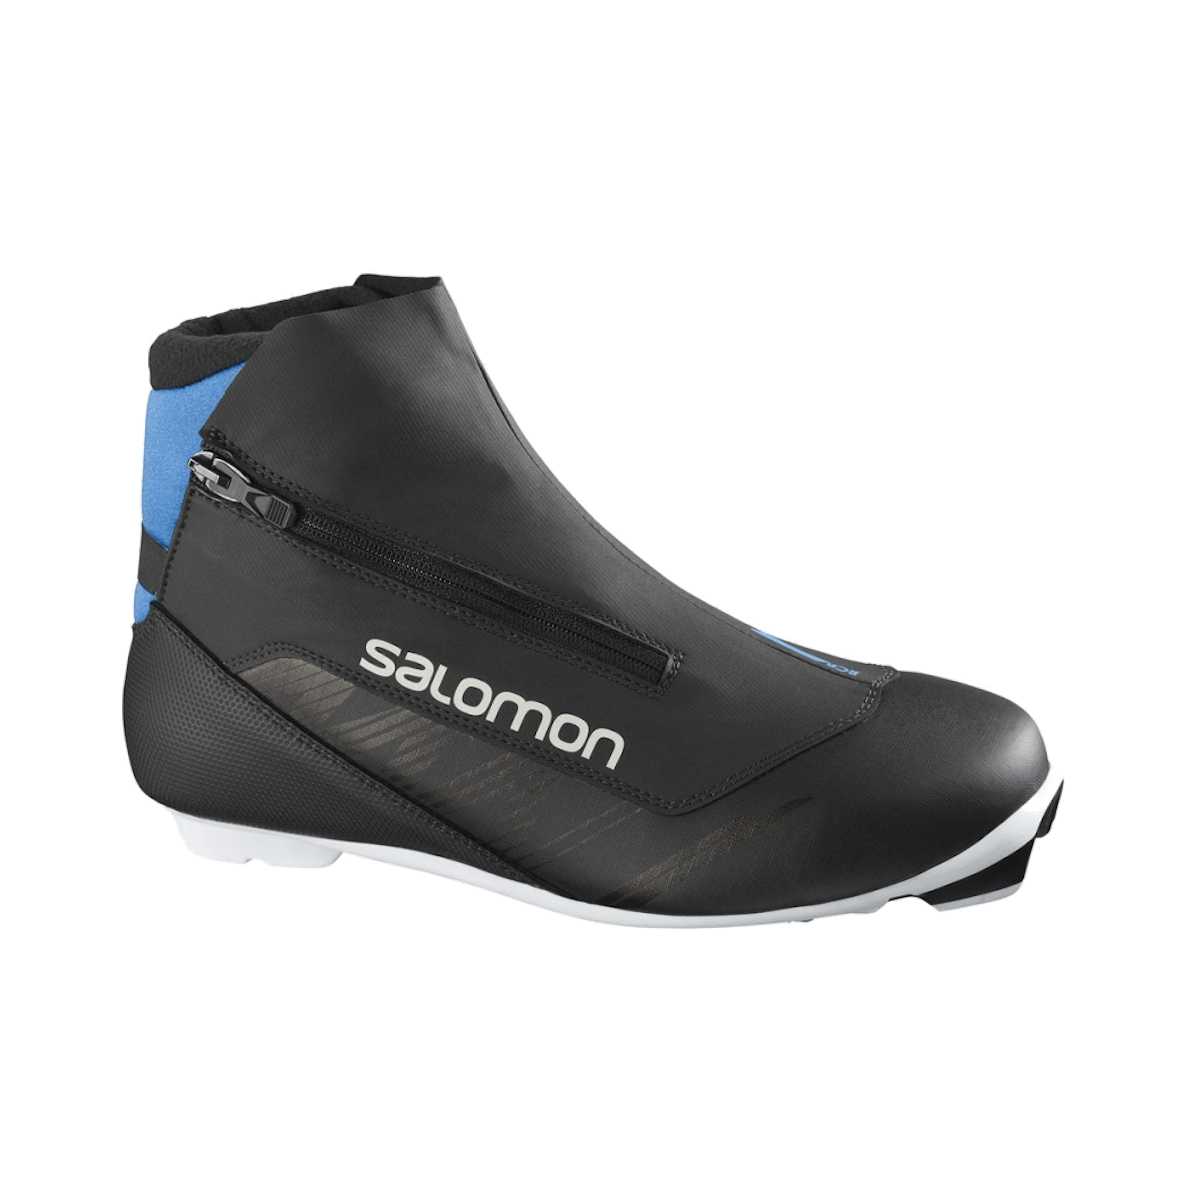 SALOMON RC 8 NOCTURNE PROLINK classic nordic boots - black/blue